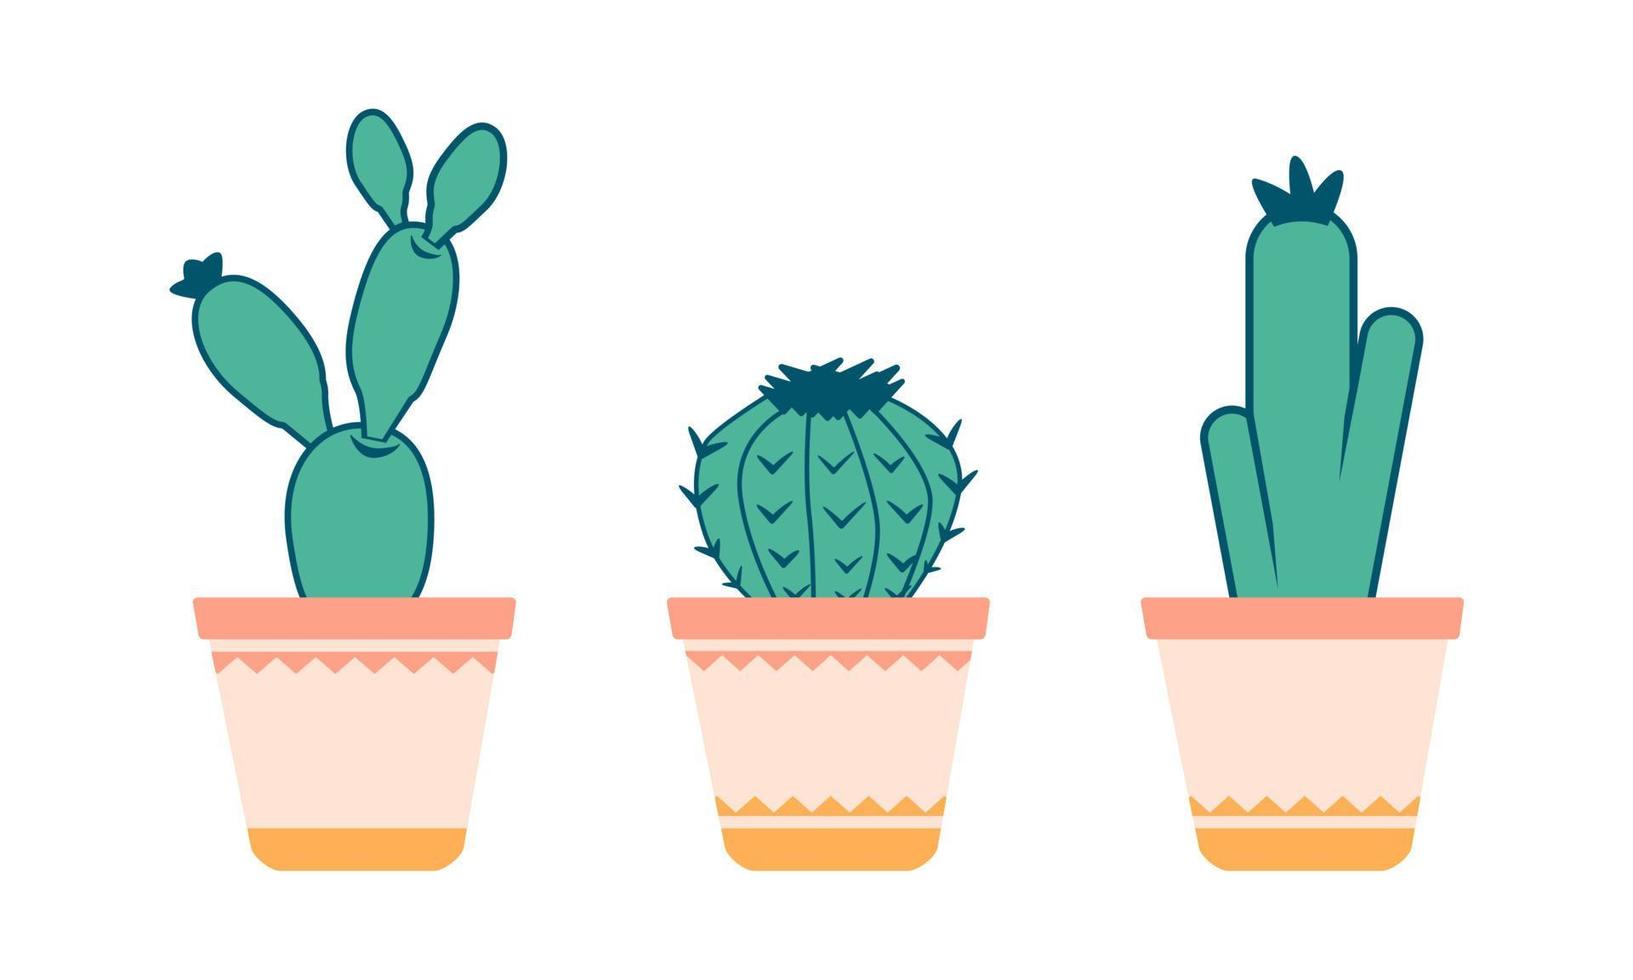 conjunto de cactus de dibujos animados lindo para la decoración del hogar, el interior o la tarjeta de felicitación vector